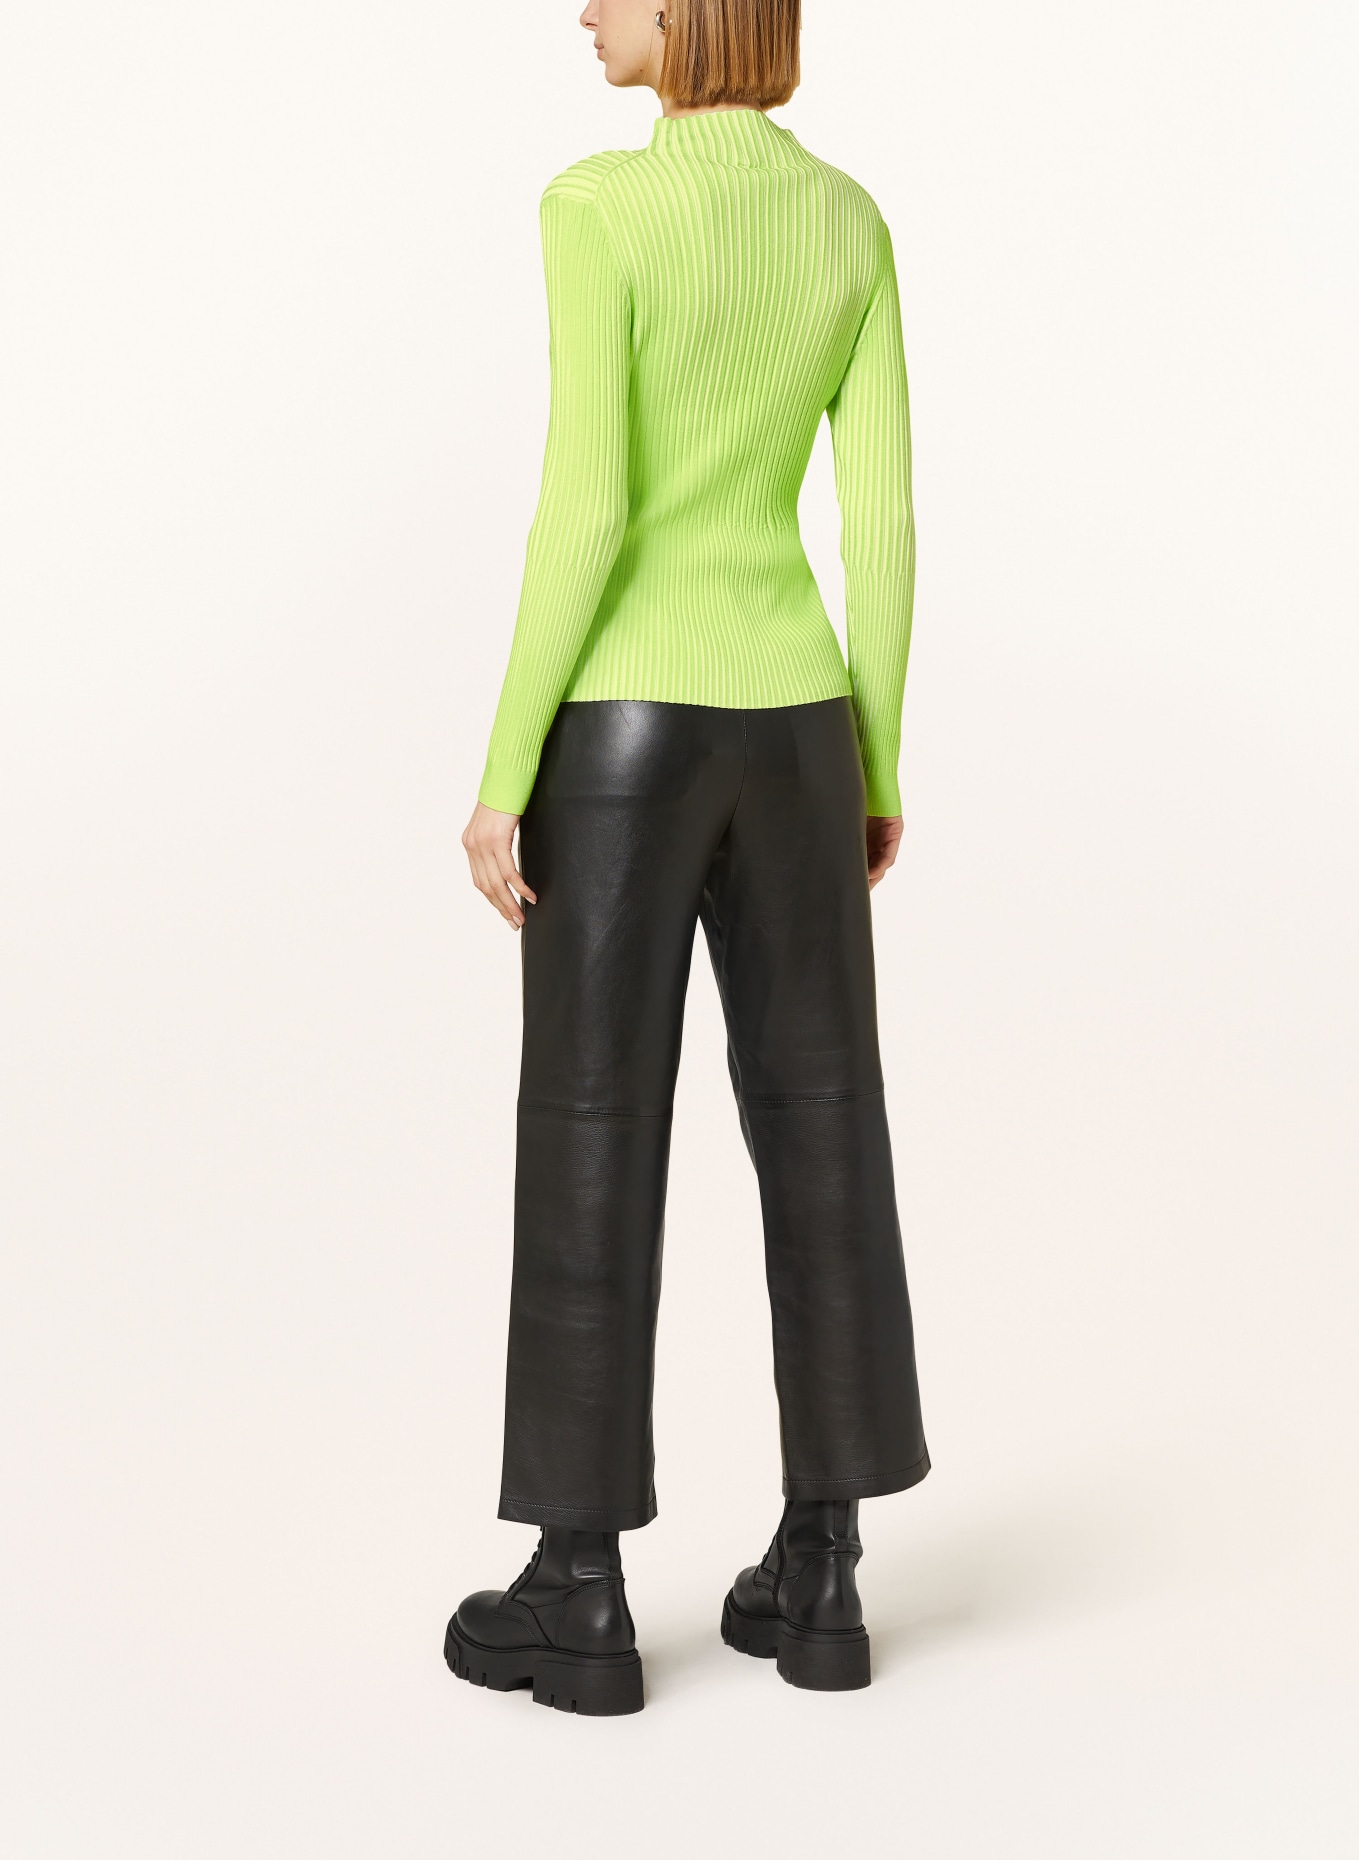 ULLI EHRLICH SPORTALM Sweater, Color: NEON GREEN/ ECRU (Image 3)